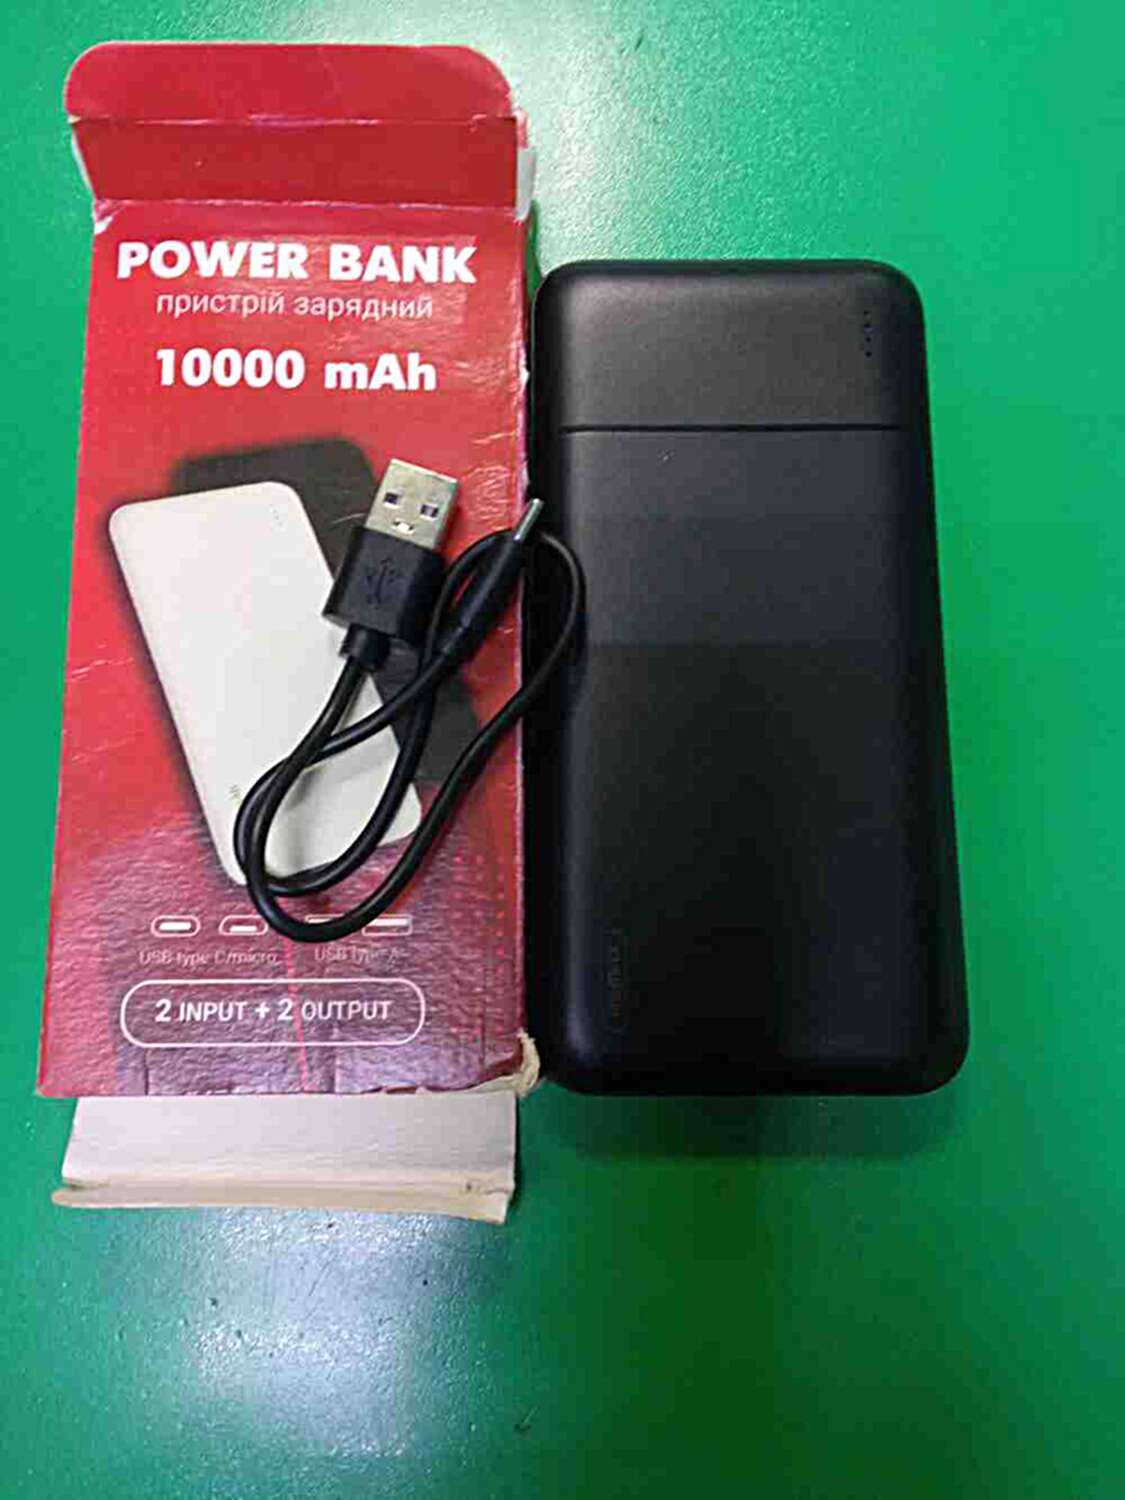 PowerBank 10000 mAh  1